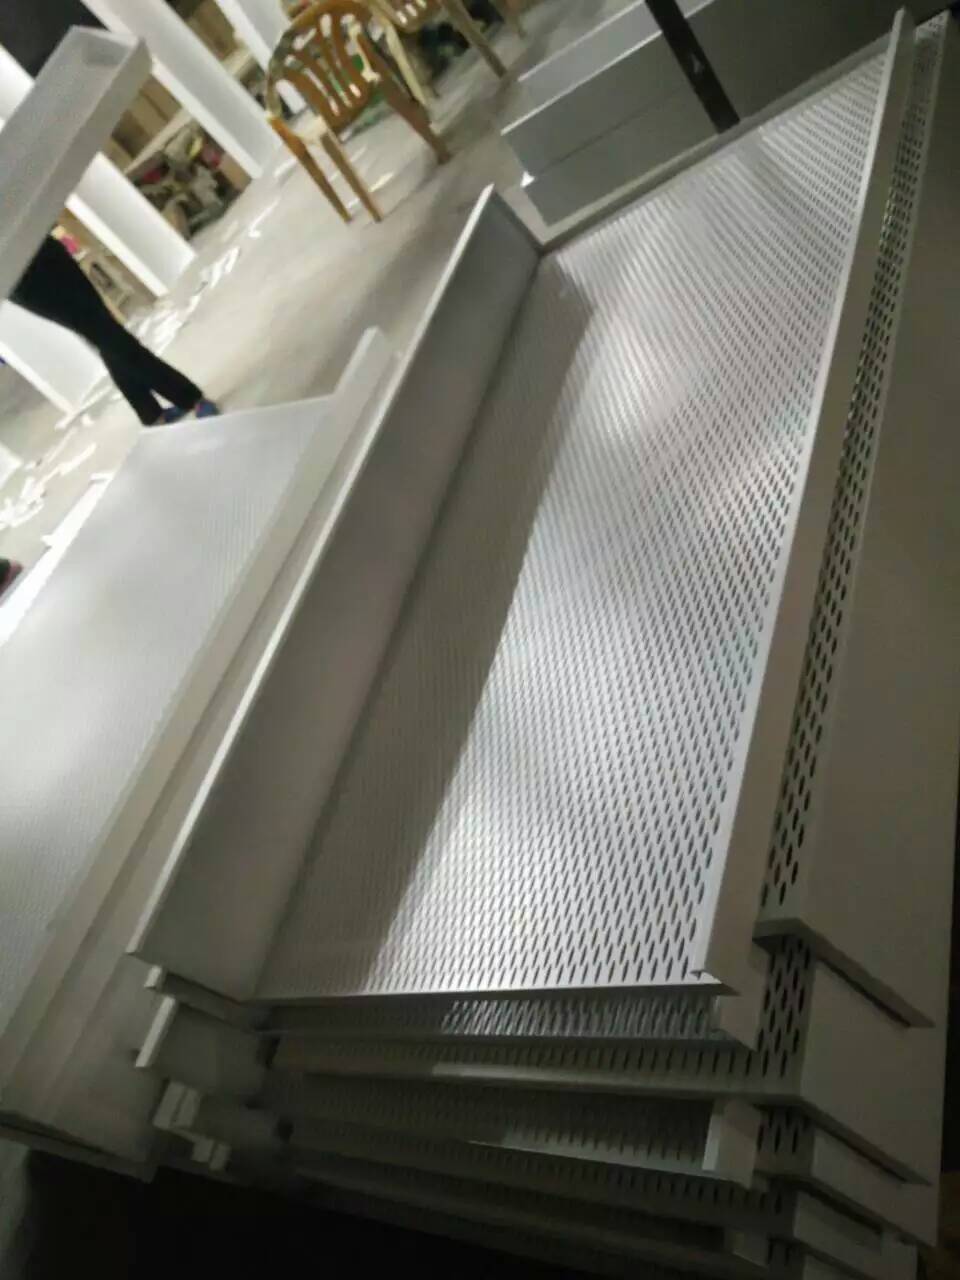 4S汽車店辦公室吊頂裝修鍍鋅鋼板廠家